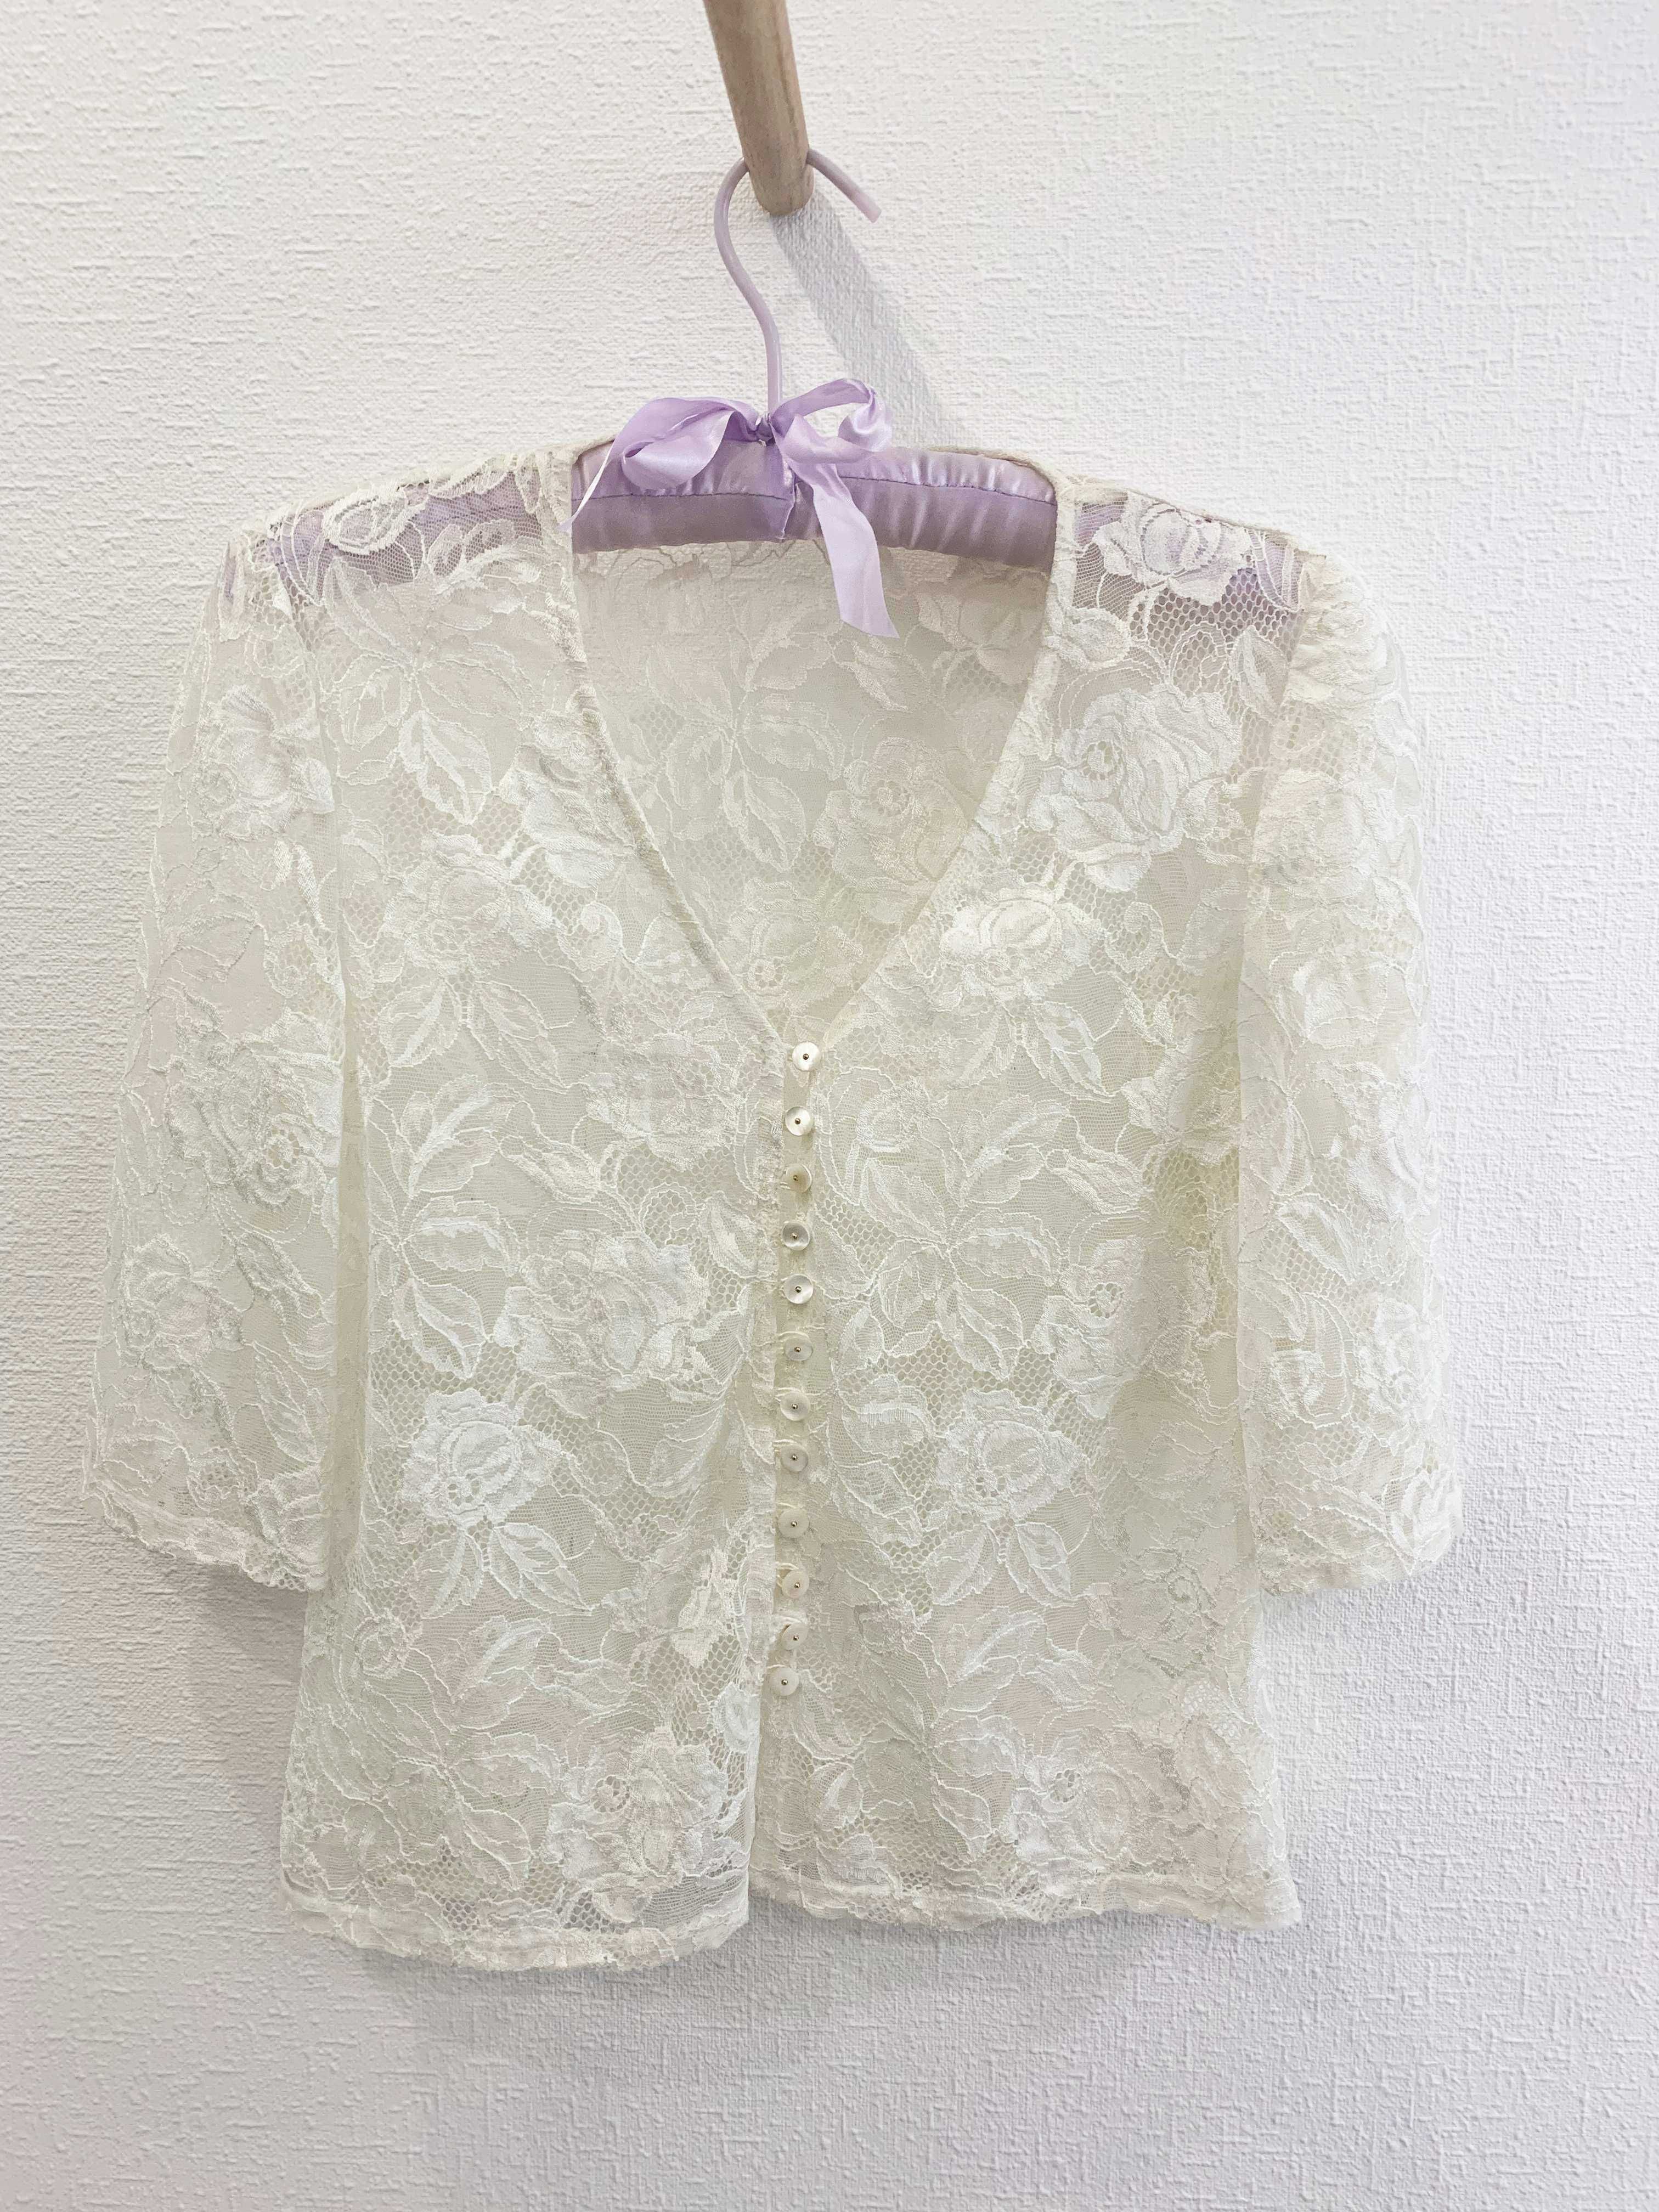 Кружевная блузочка с перламутровыми пуговичками, 44 размер